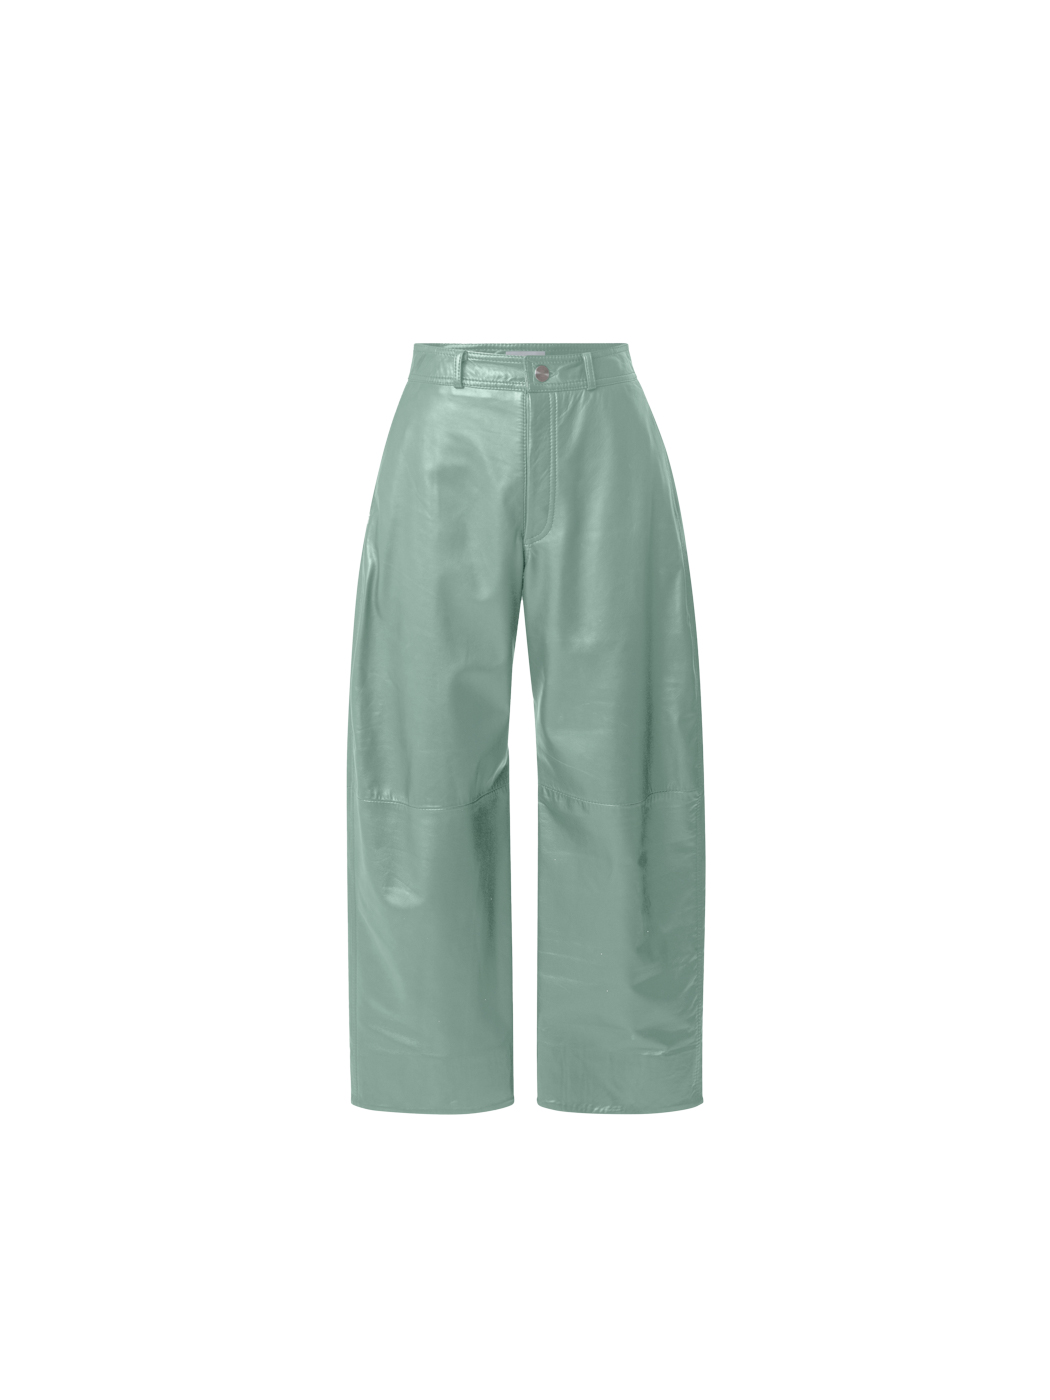 32 Nynne, Mint Green Pants, Shopnynne.eu